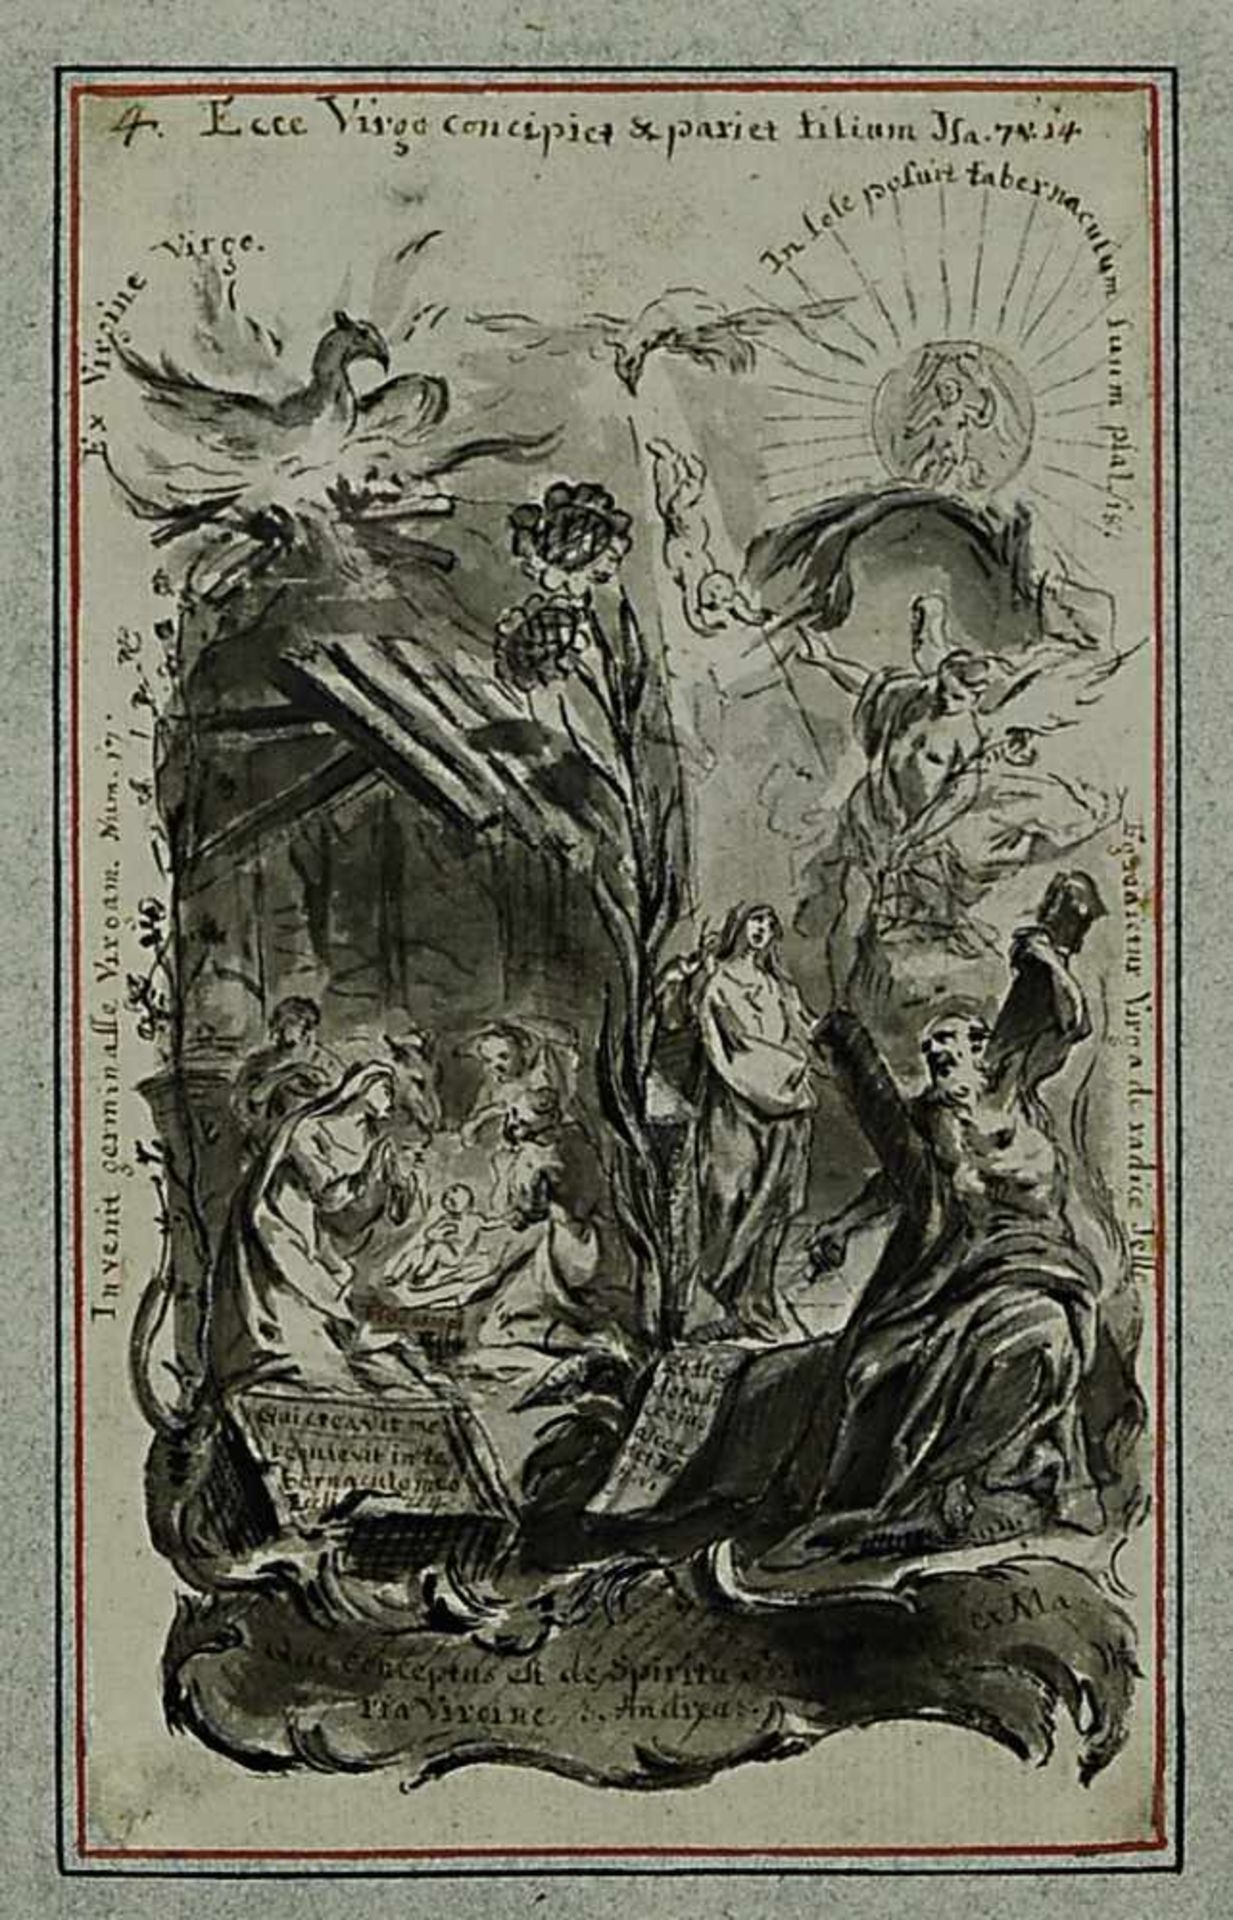 Christ, Joseph 1732 Winterstetten - 1788 Augsburg, zugeschrieben Anbetung der Hirten mit Mariä